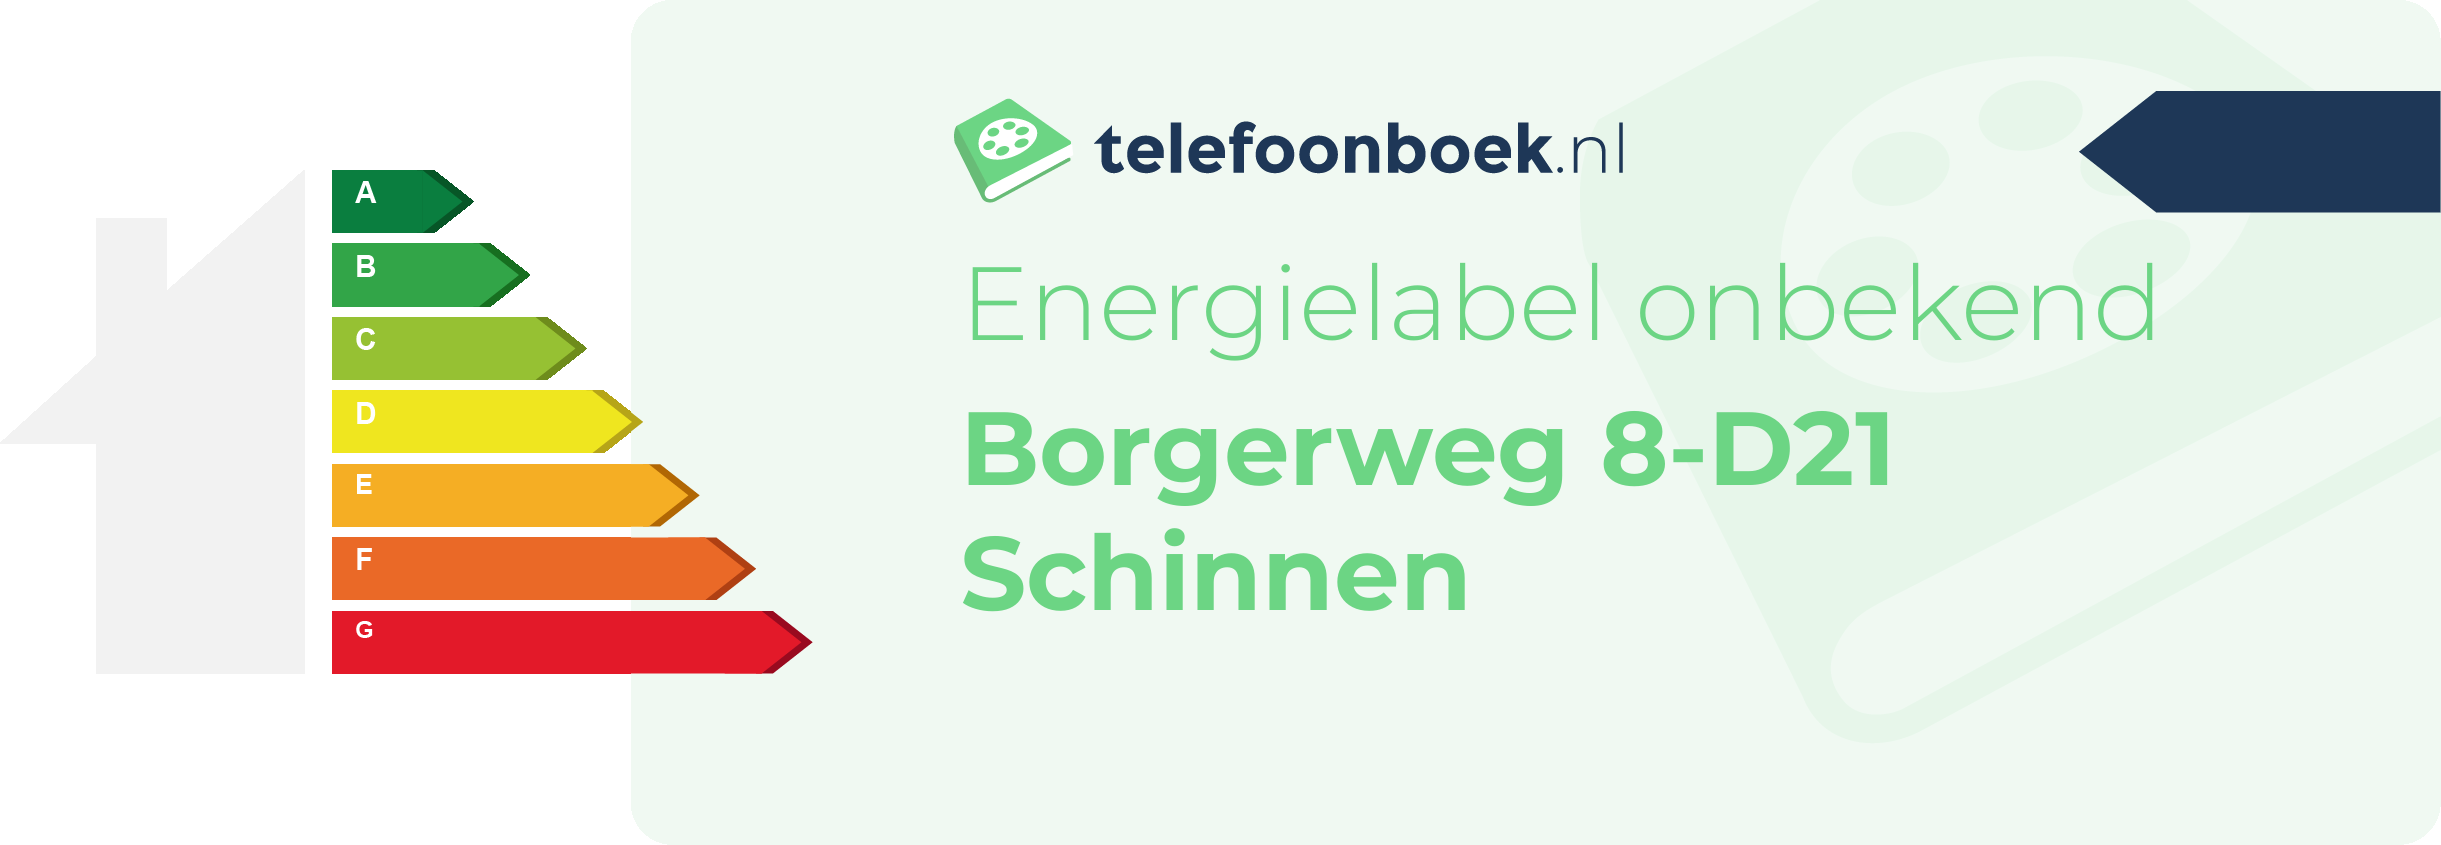 Energielabel Borgerweg 8-D21 Schinnen